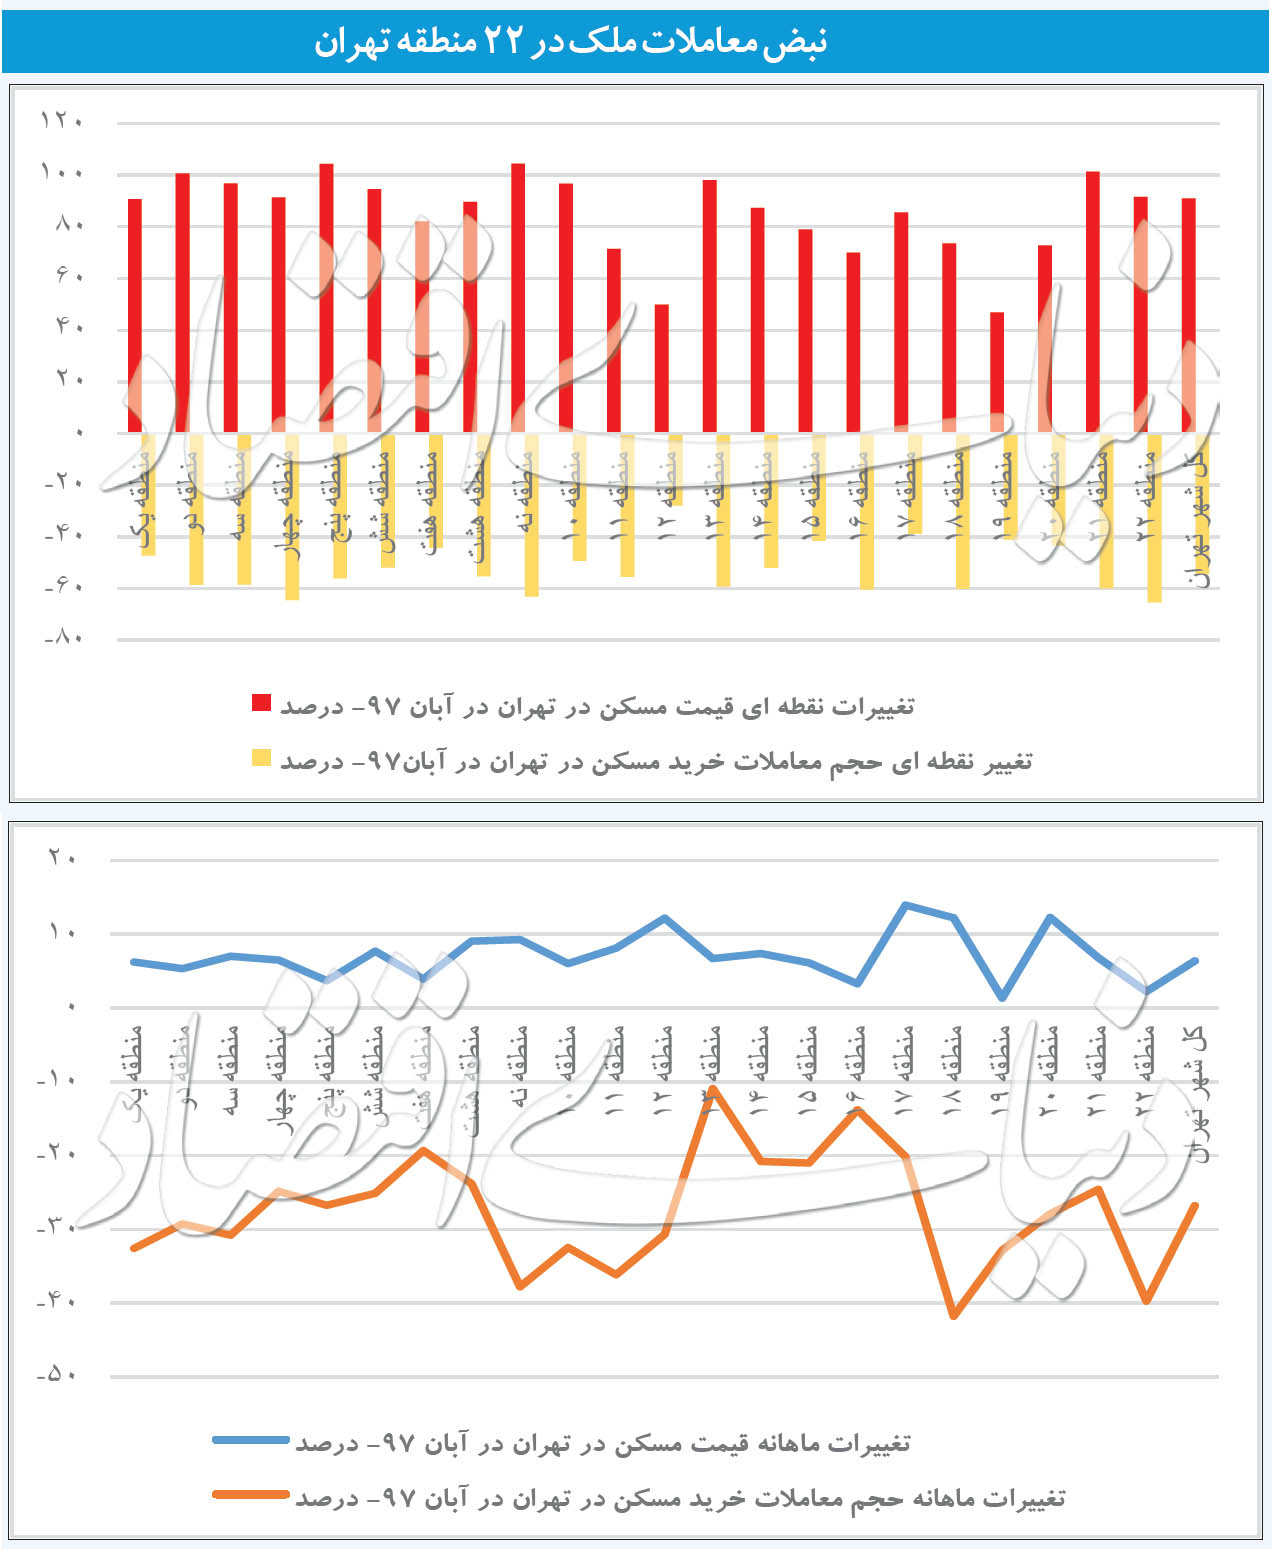 قیمت مسکن به تفکیک مناطق در تهران